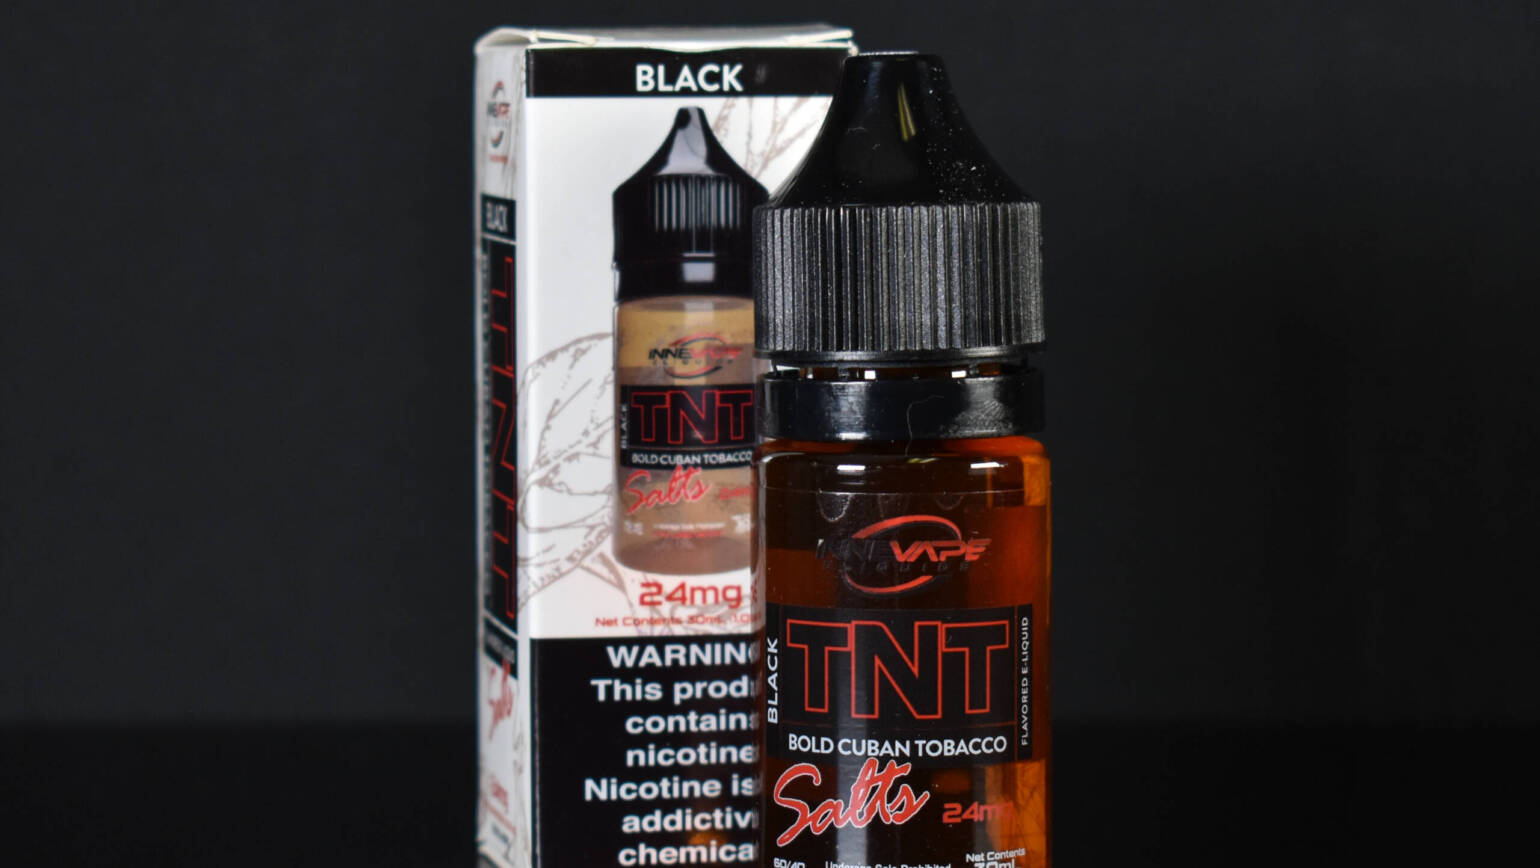 Innevape TNT Salt – Black